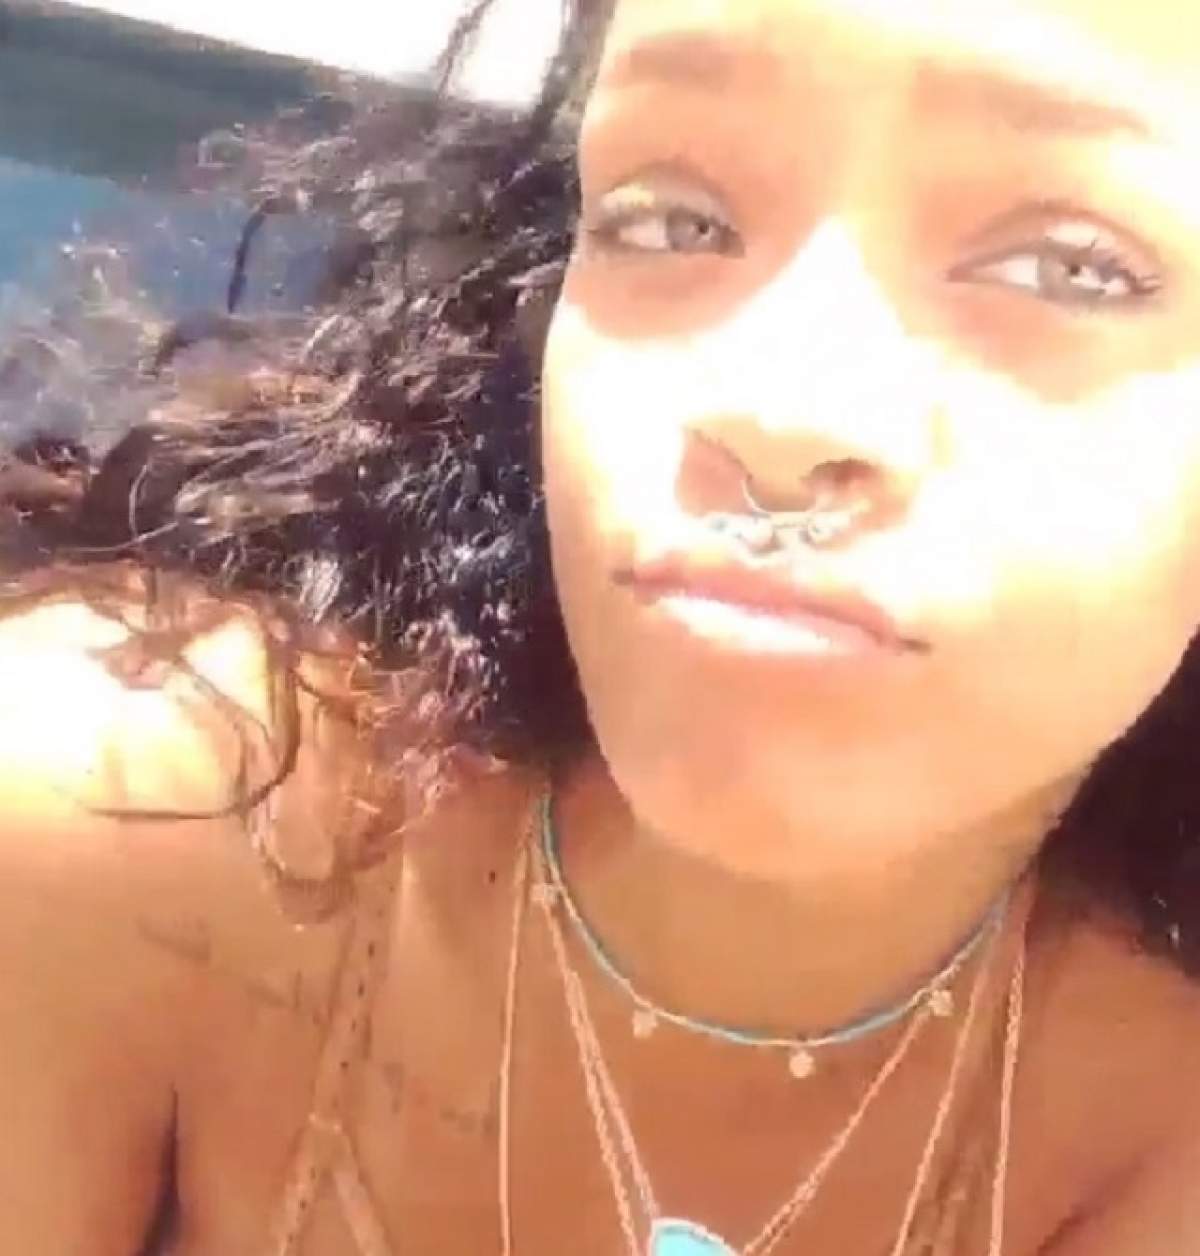 VIDEO / Rihanna petrece aşa cum nu ai mai văzut-o! S-a filmat în timp ce fuma marijuana şi îşi arăta sânii în faţa camerei